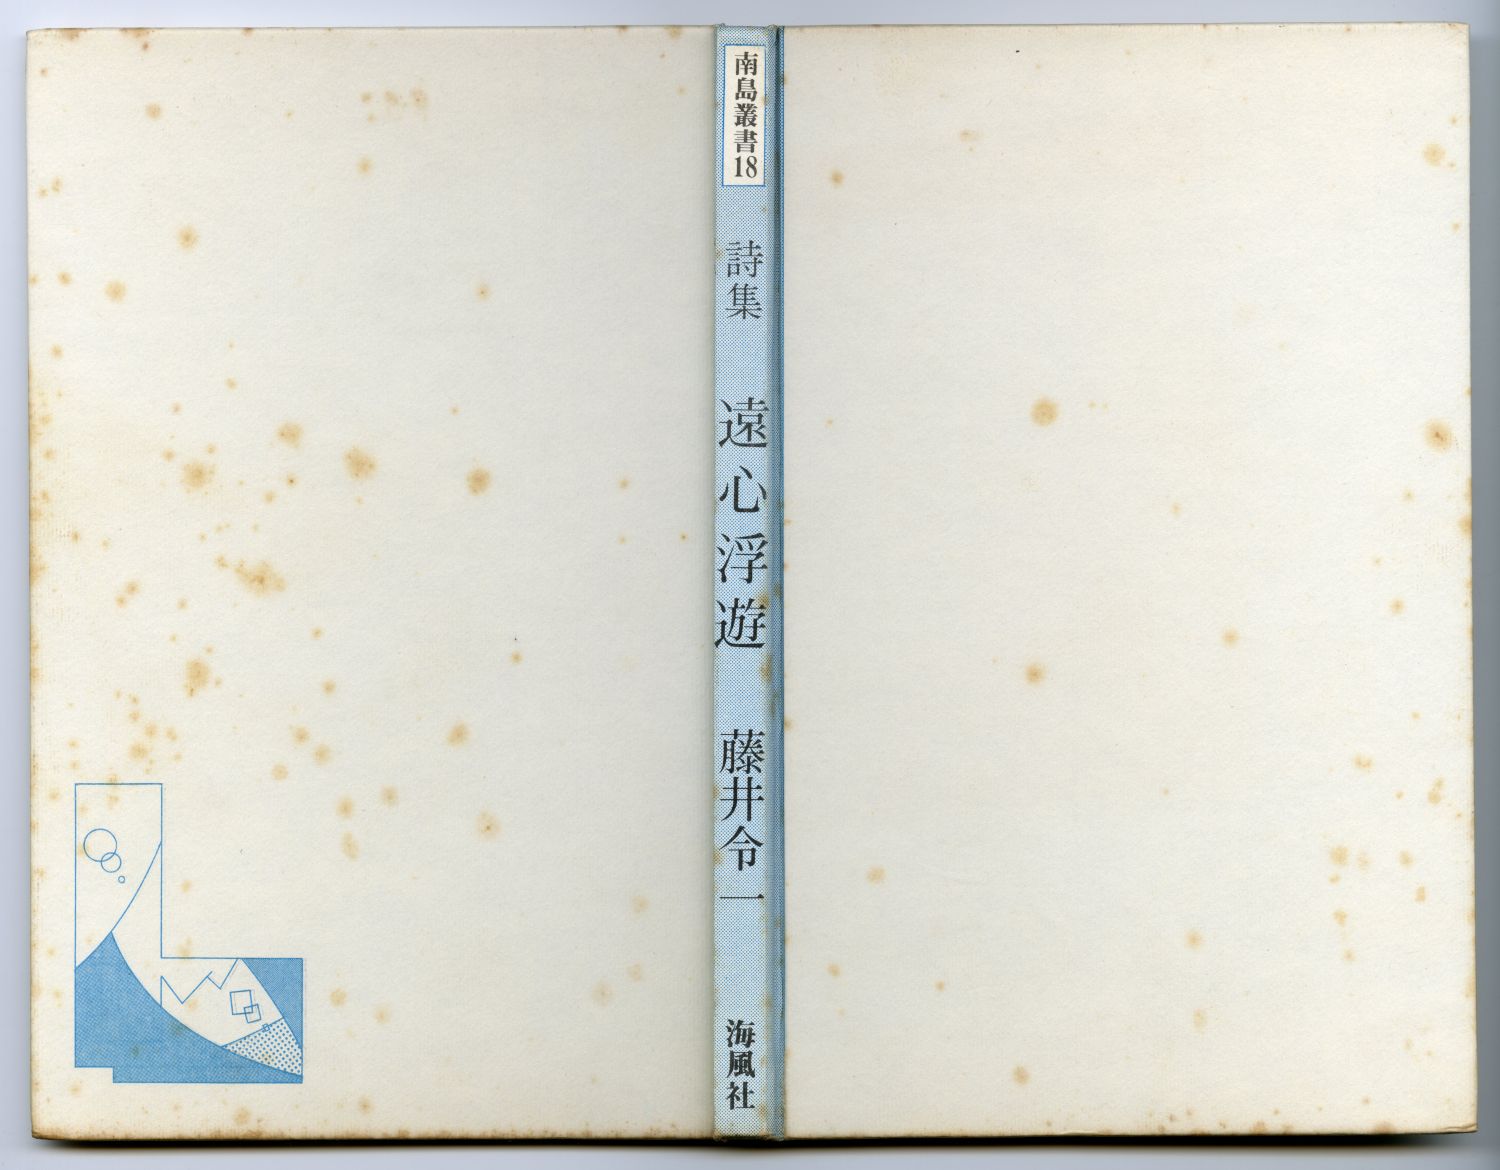 藤井令一『遠心浮遊』（1984年、海風社）表紙